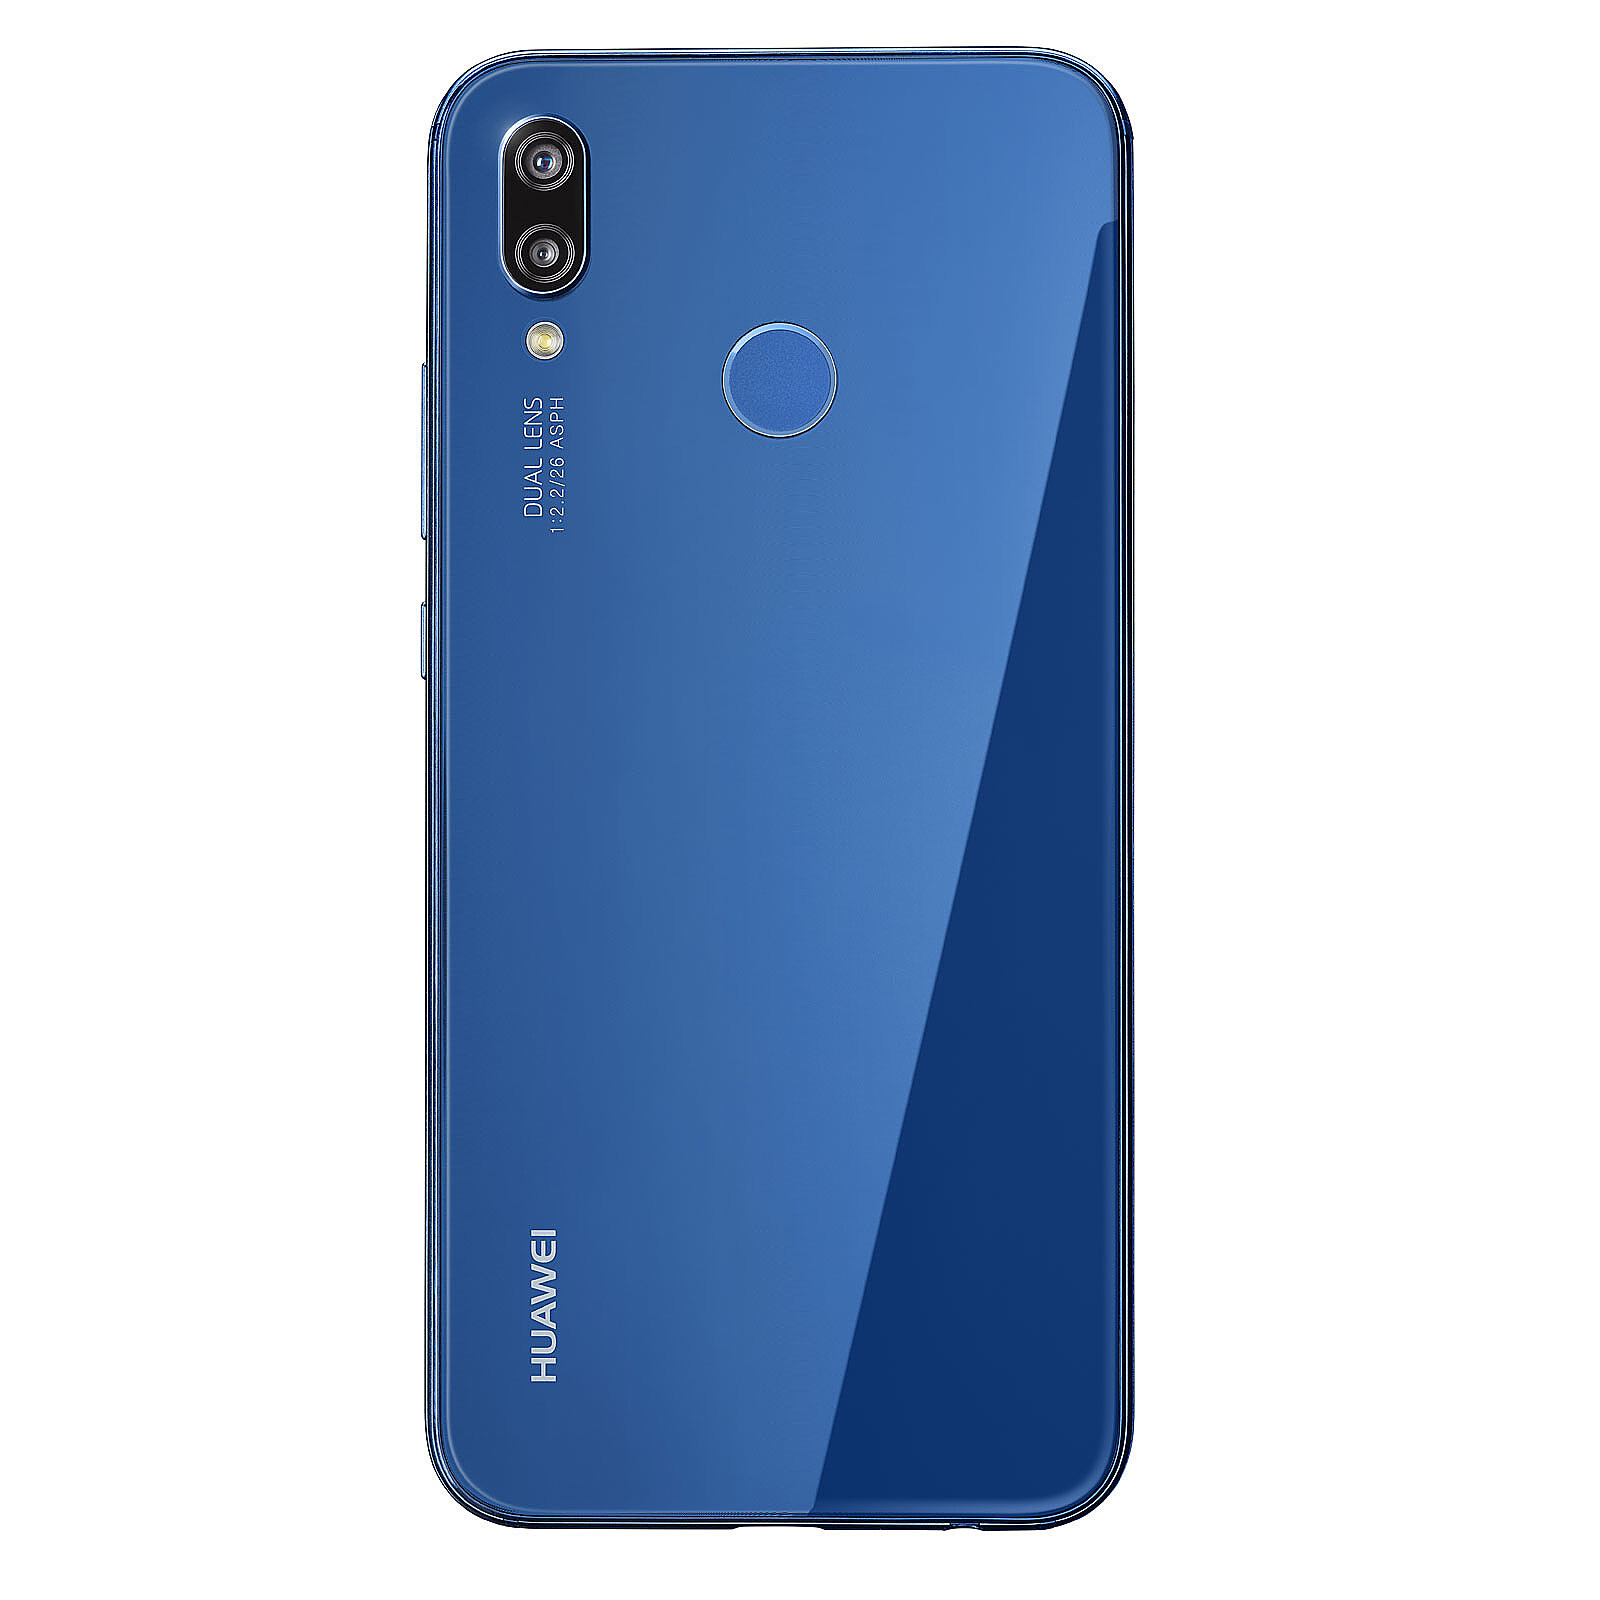 Huawei P20 Lite Azul - Móvil y smartphone - LDLC